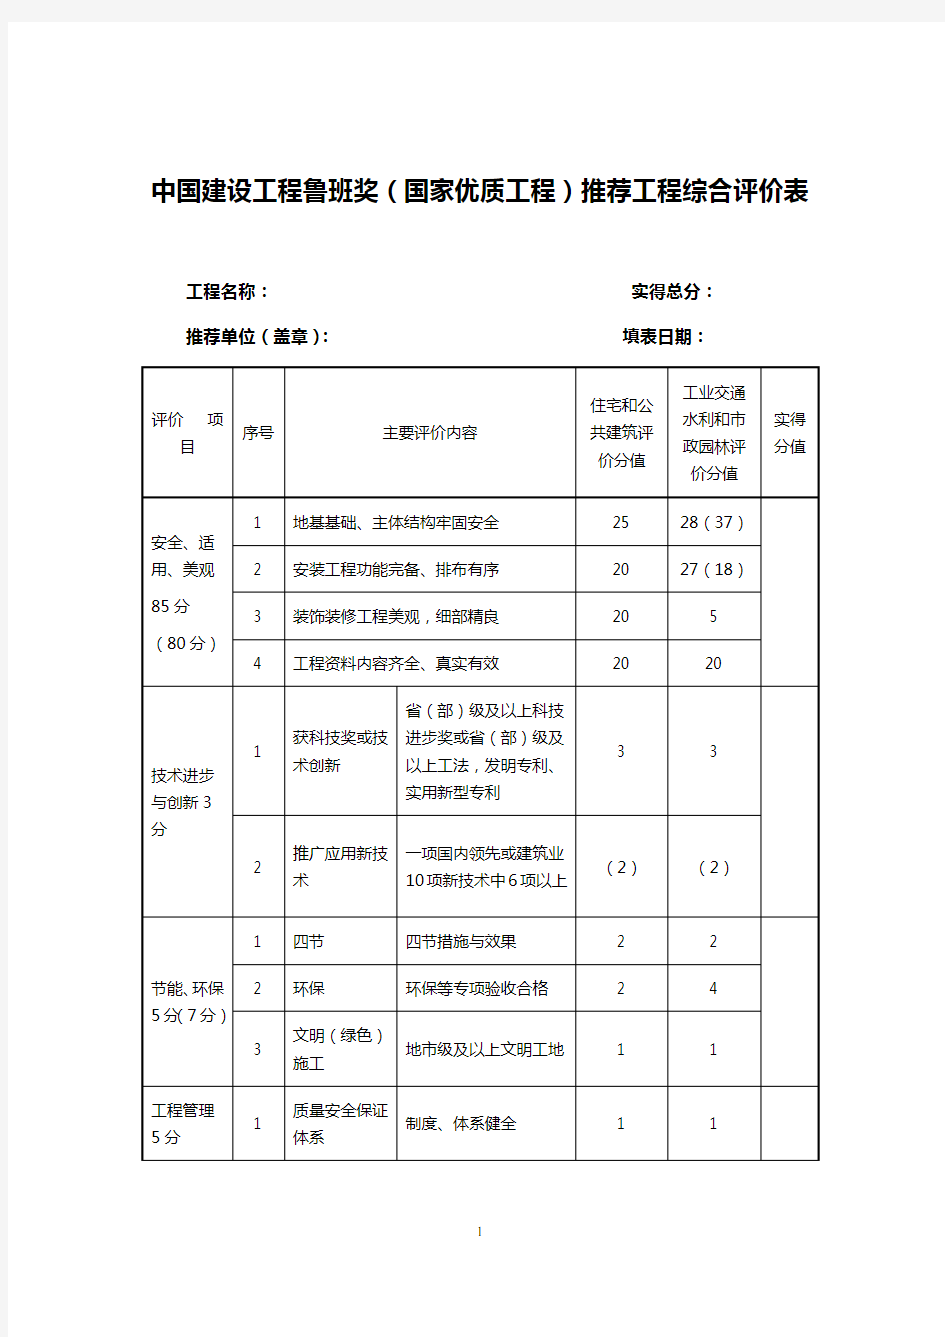 中国建设工程鲁班奖(国家优质工程)推荐工程综合评价表